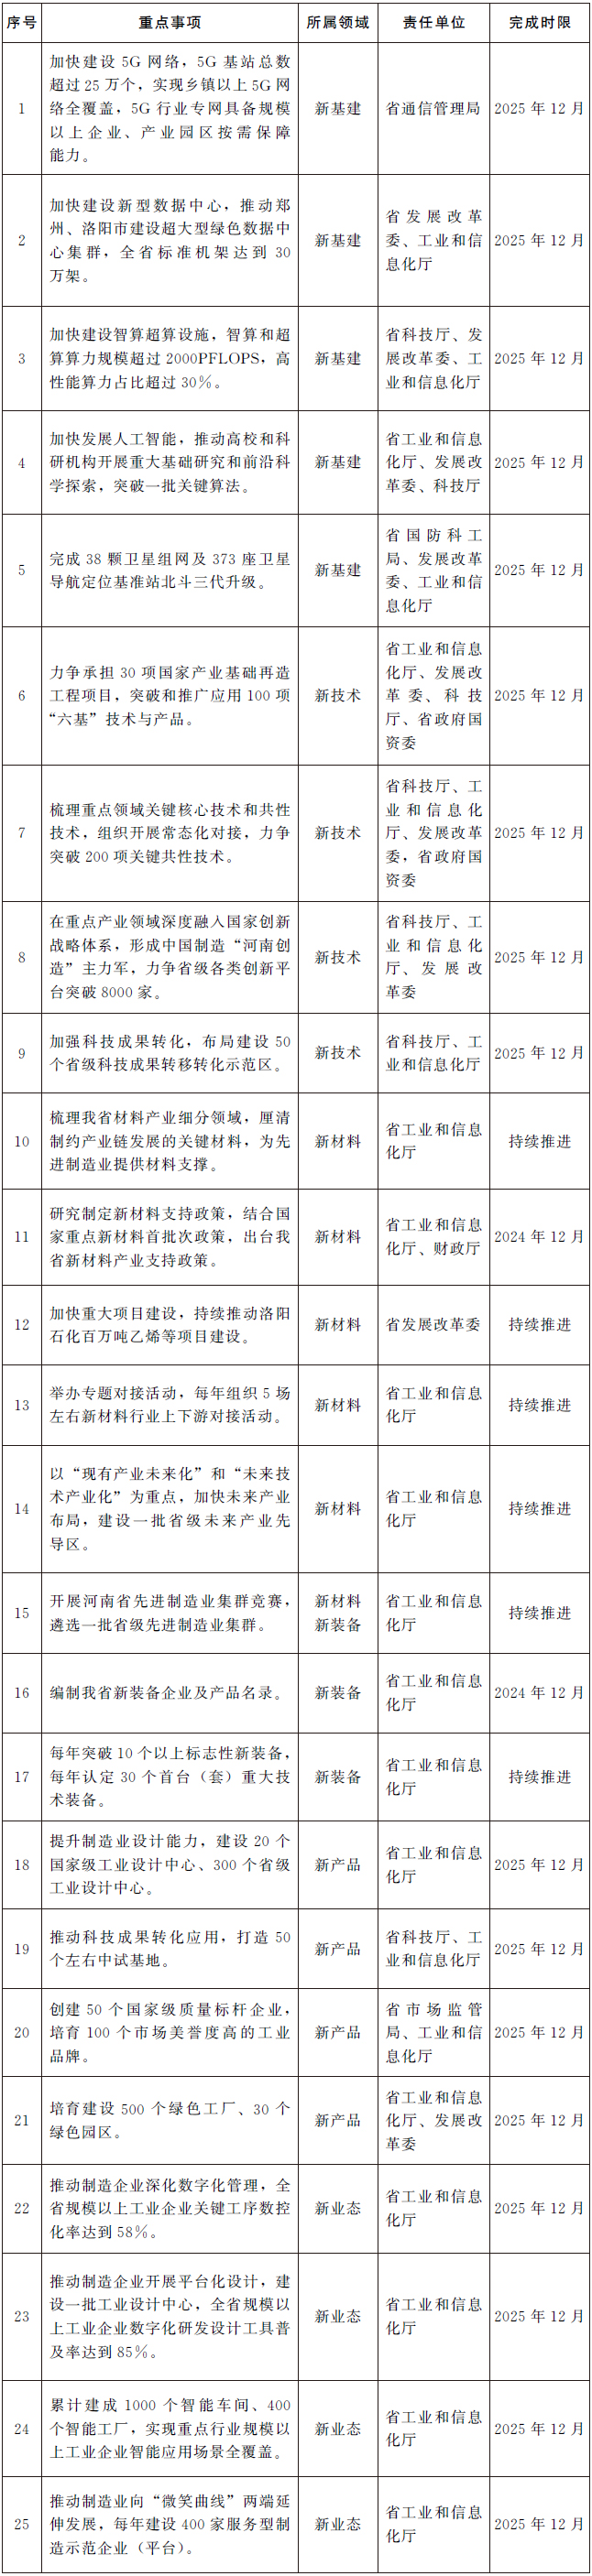 河南省人民政府办公厅 关于印发河南省加快制造业“六新”突破实施方案的通知